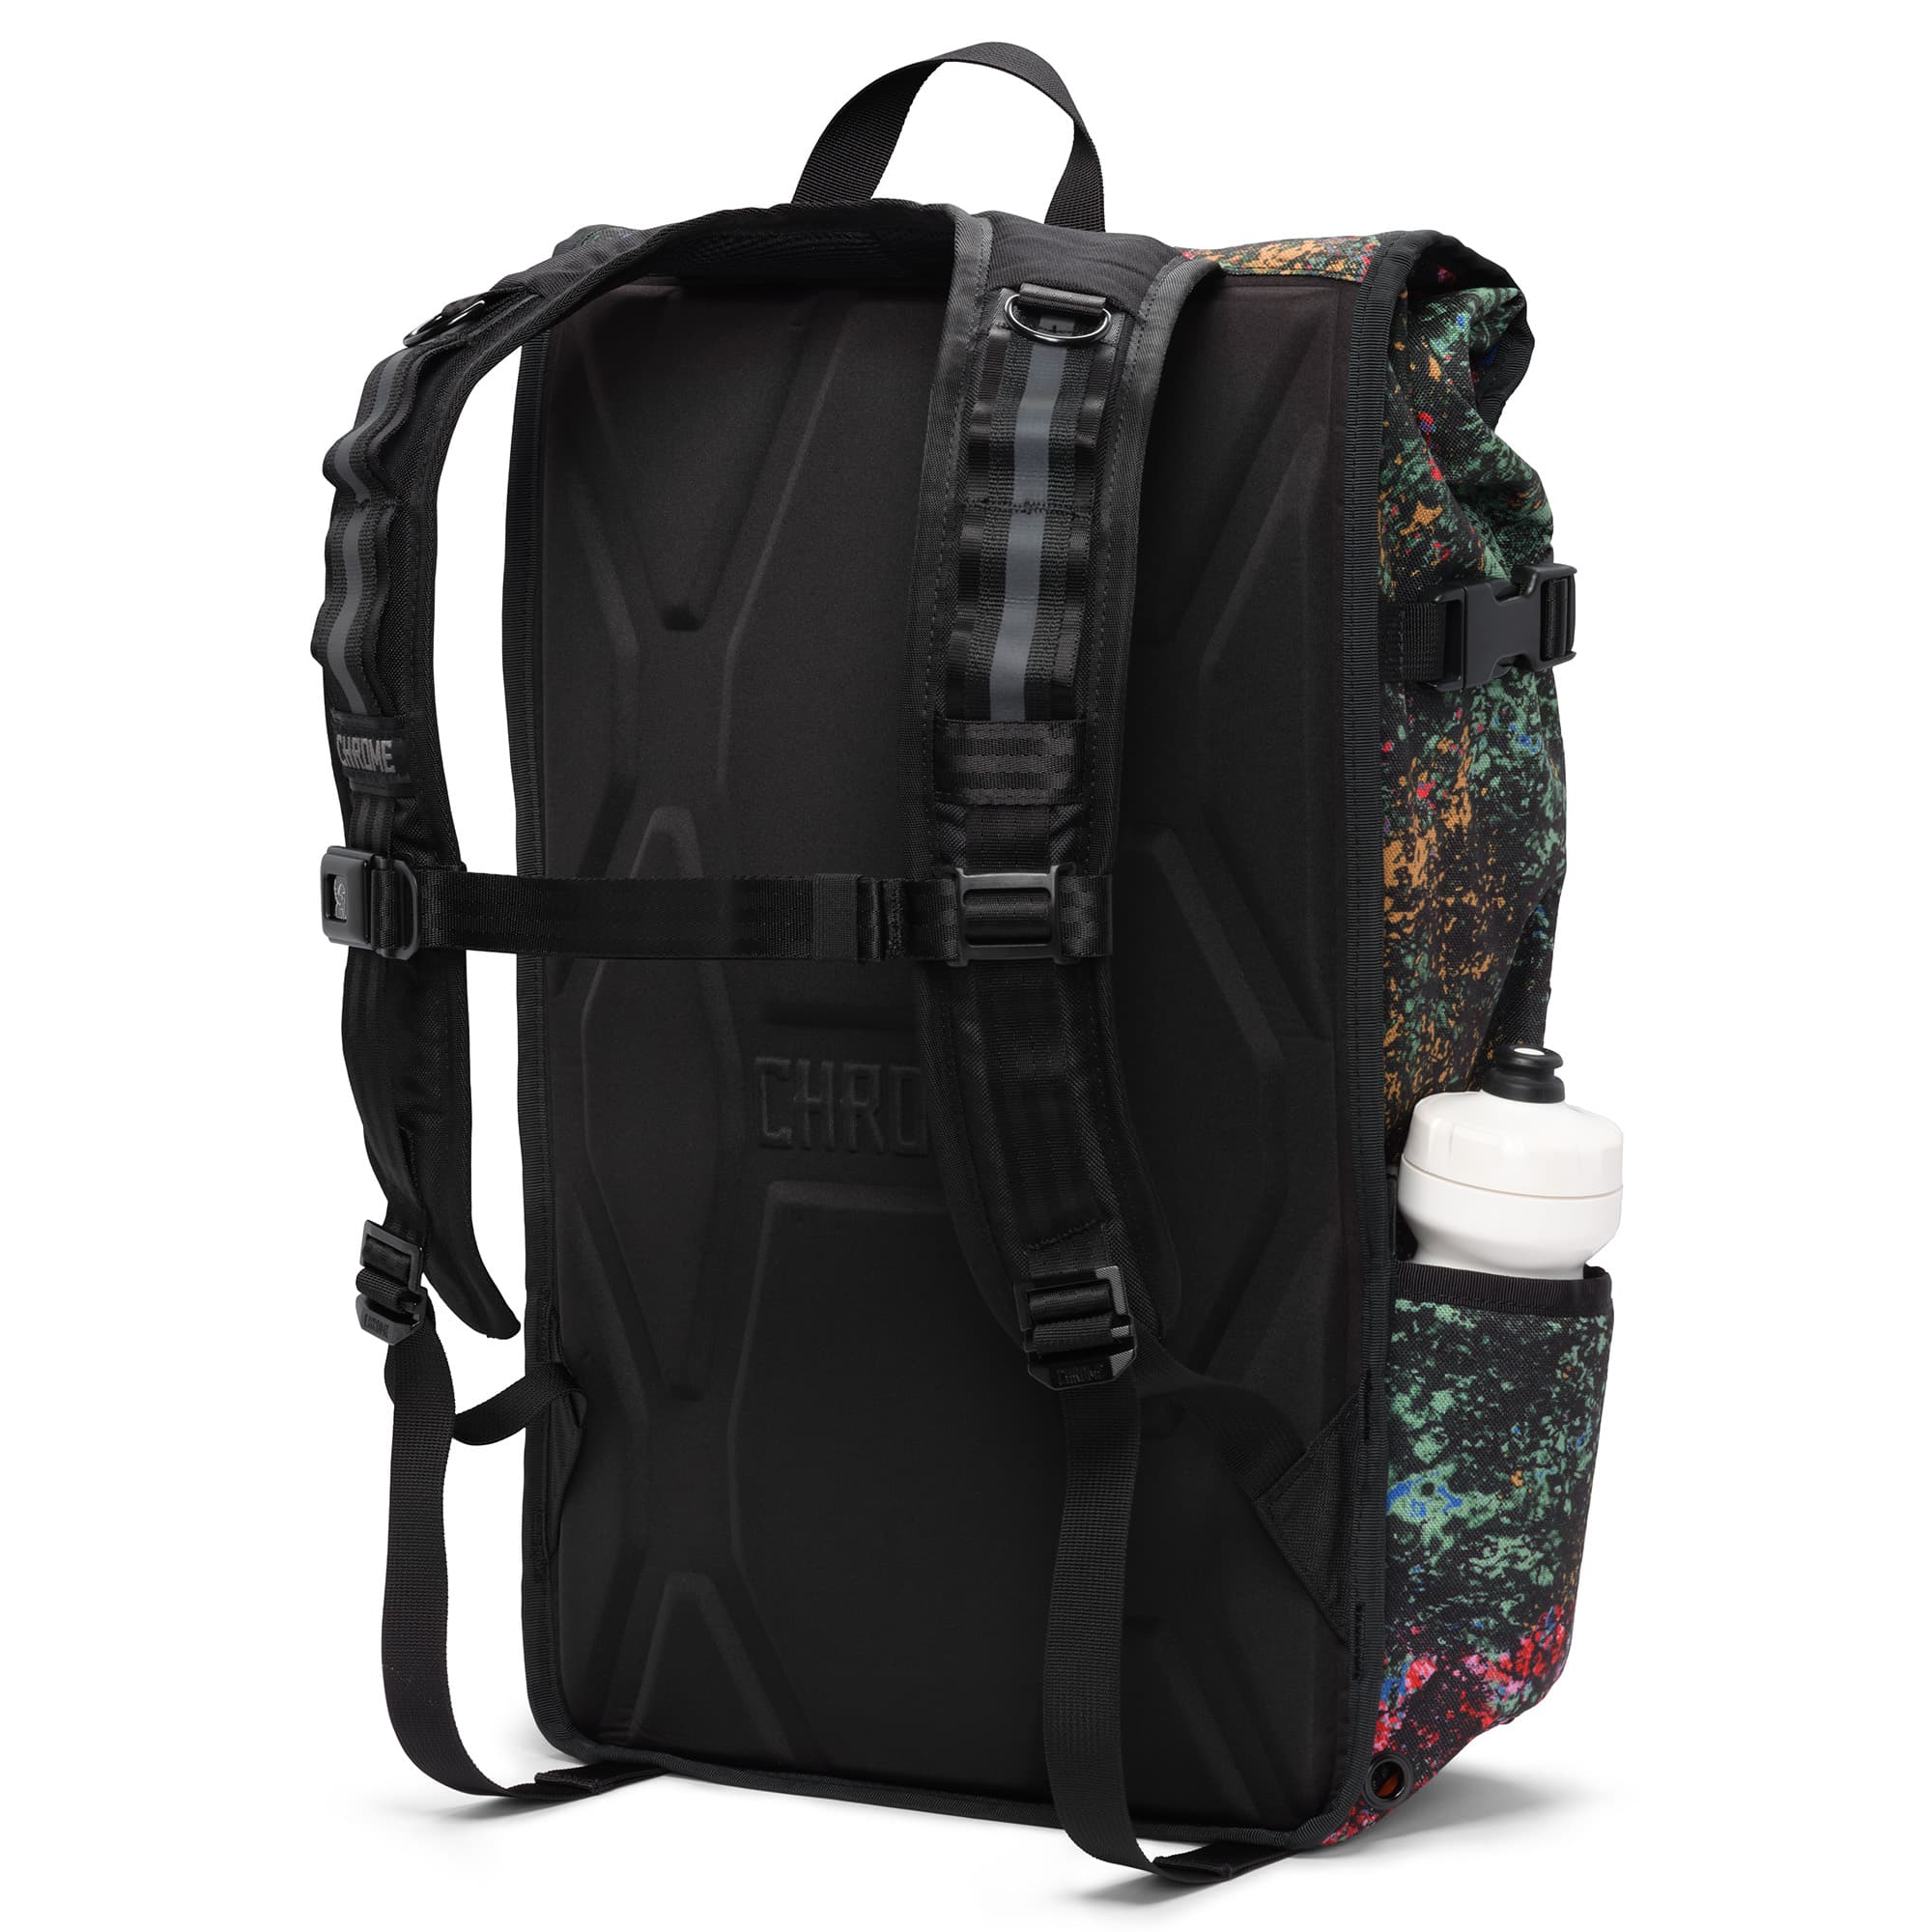 Studio Black Barrage Cargo Backpack harness detail #color_studio black